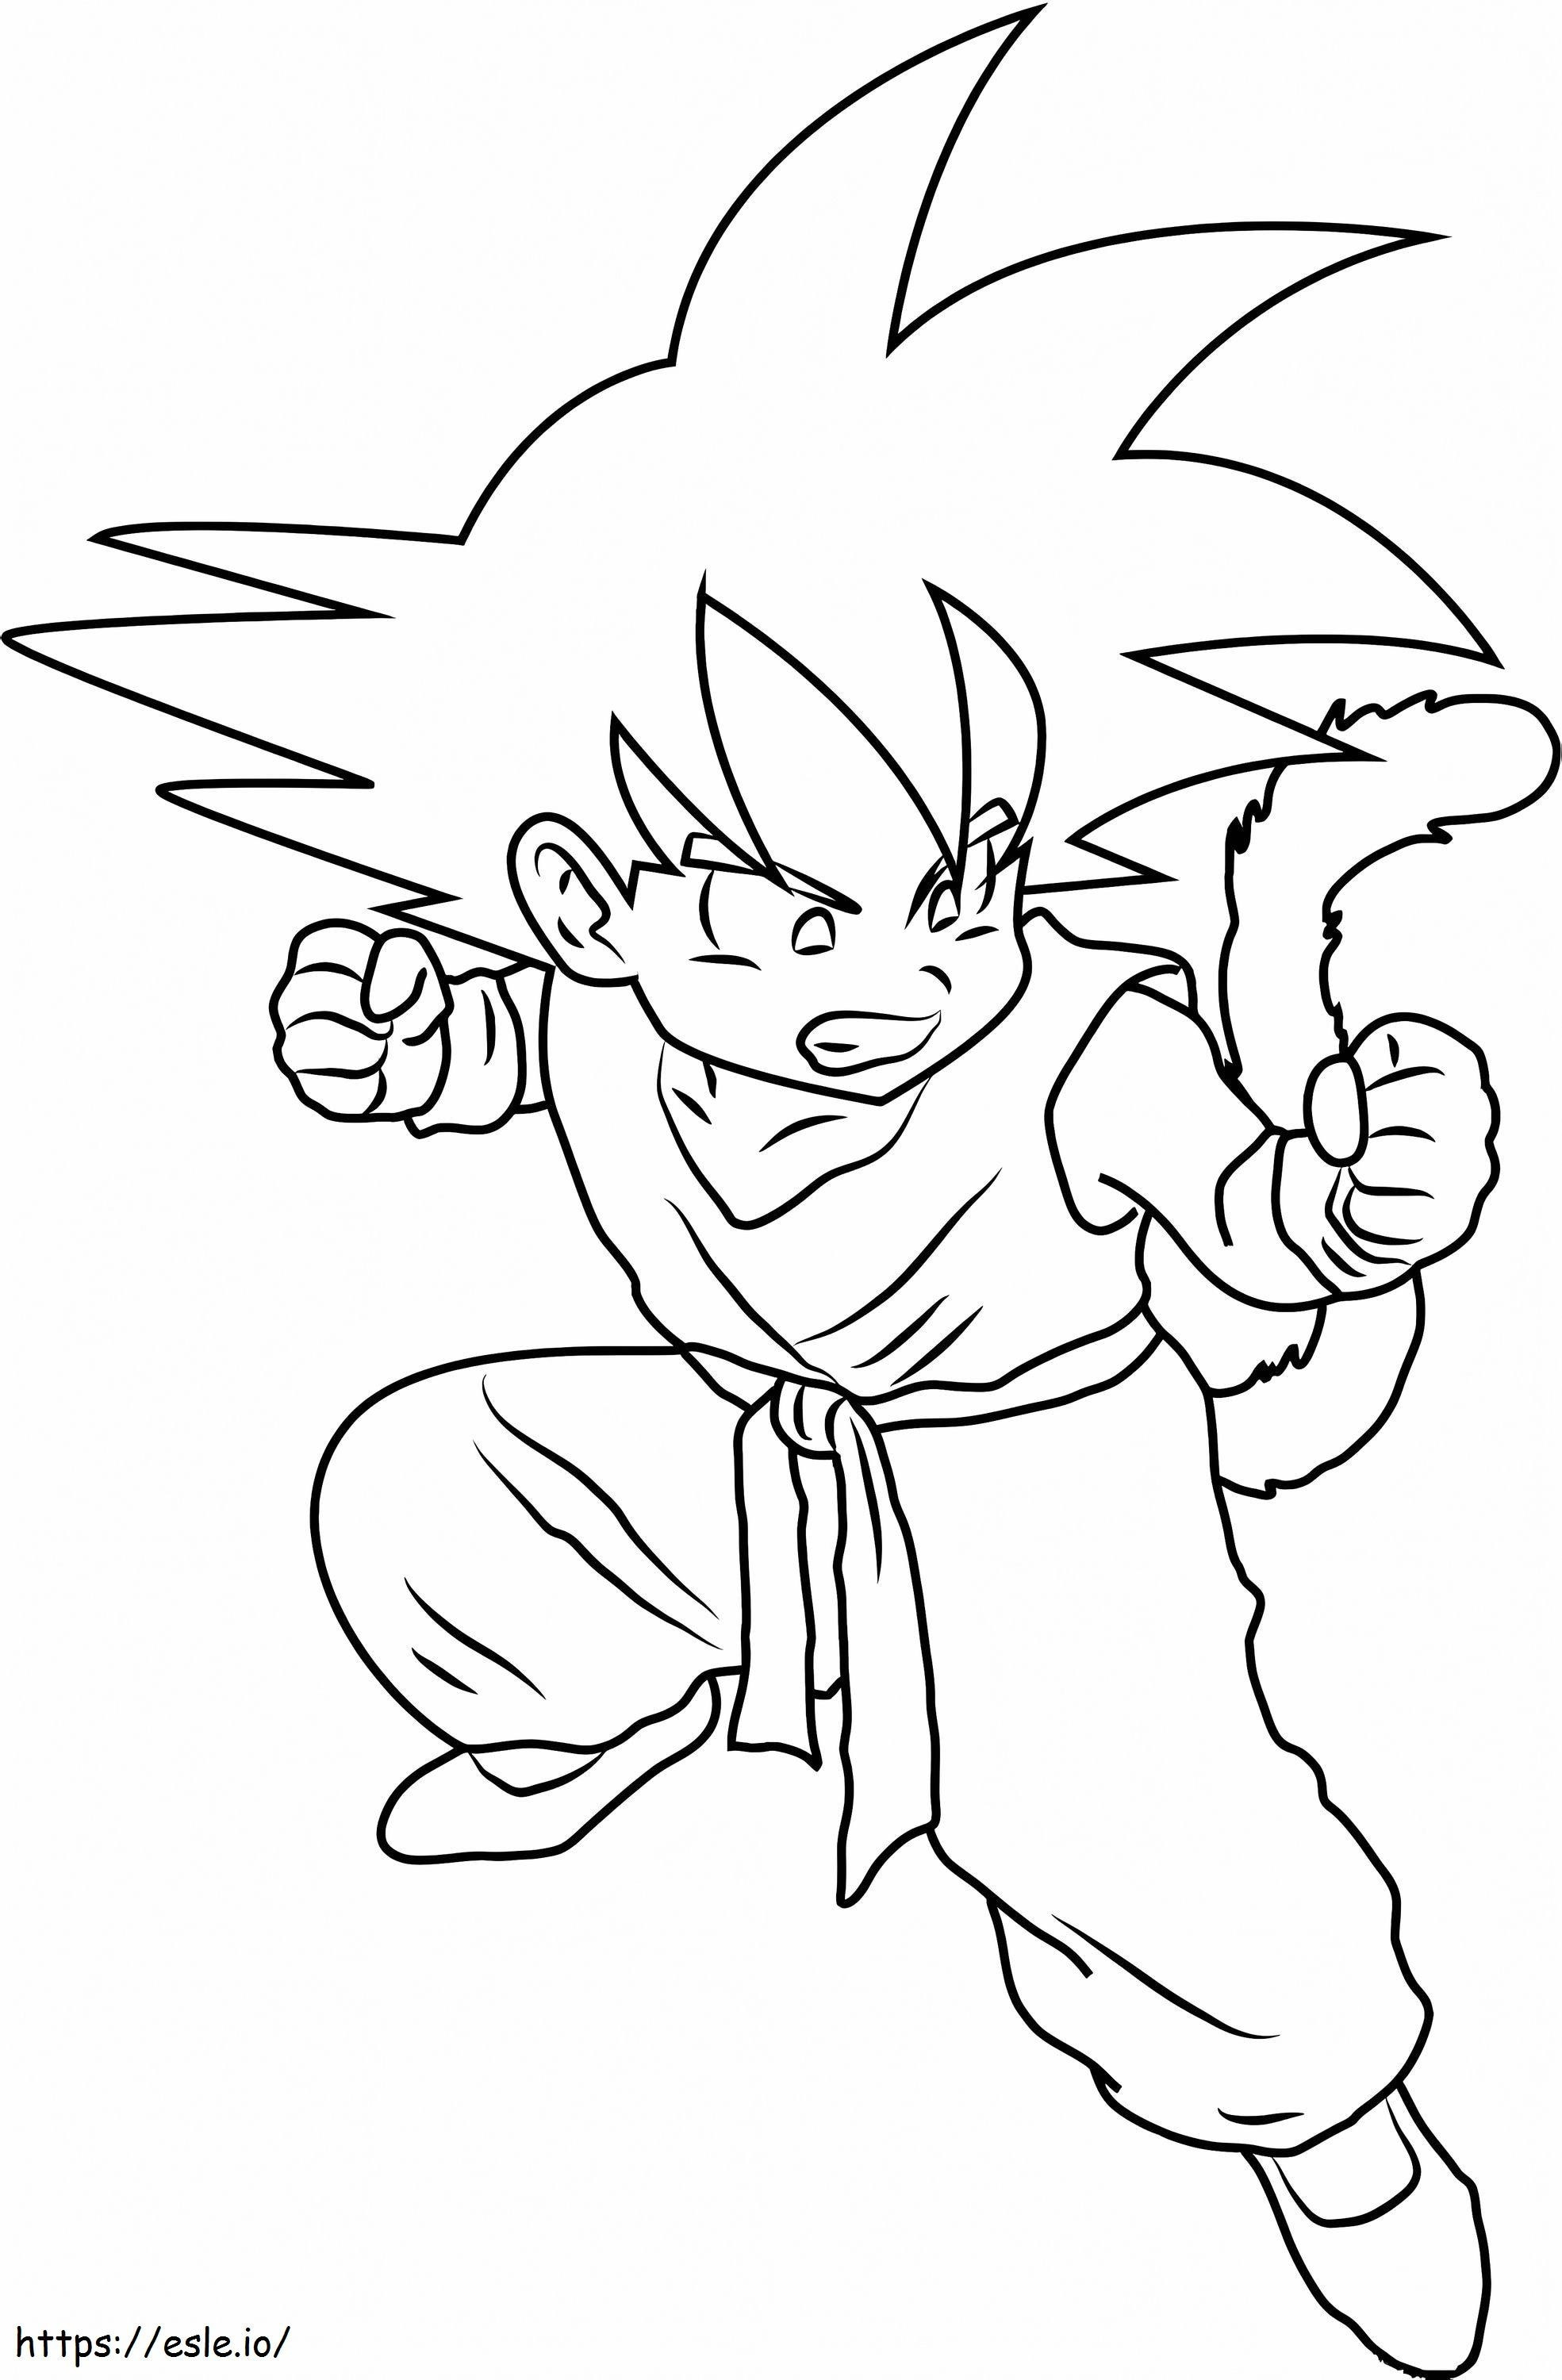 Coloriage Goku Nino Enojado à imprimer dessin